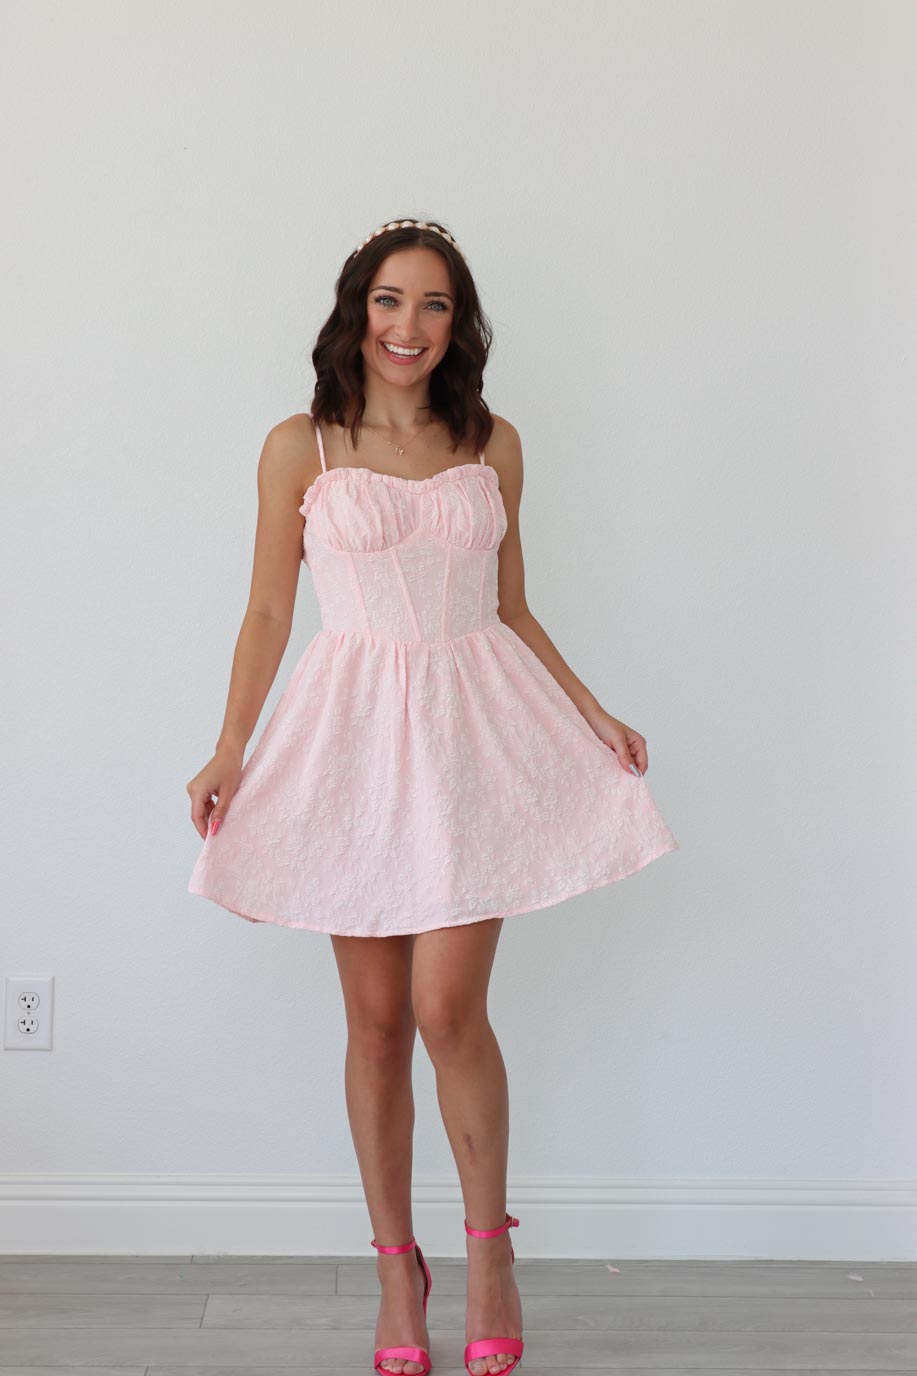 girl wearing short light pink dress